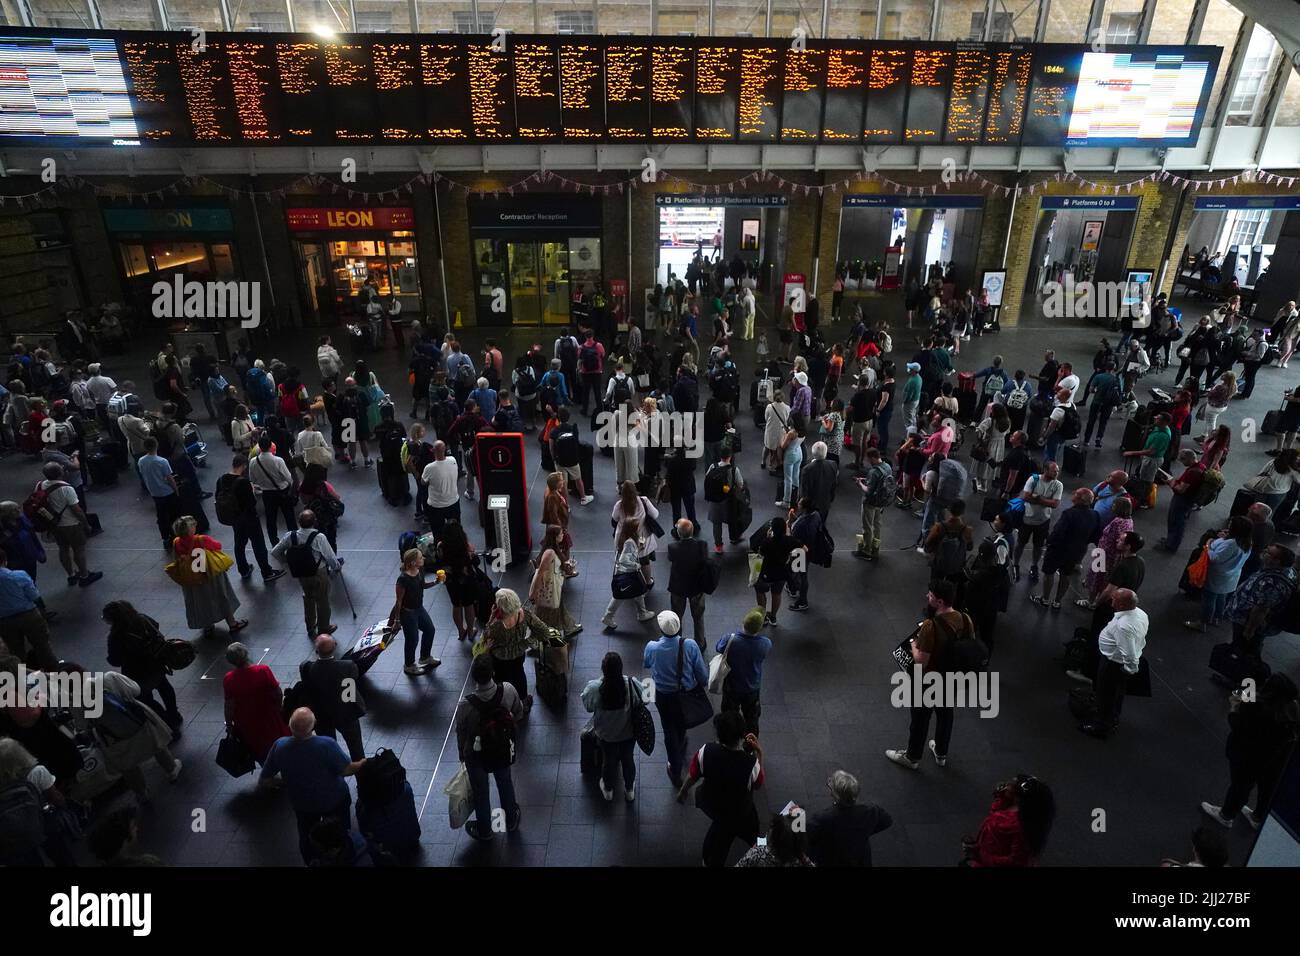 Menschen am Bahnhof King's Cross in London, da viele Familien zu Beginn der Sommerferien für viele Schulen in England und Wales auf einen Kurzurlaub gehen. Bilddatum: Freitag, 22. Juli 2022. Stockfoto